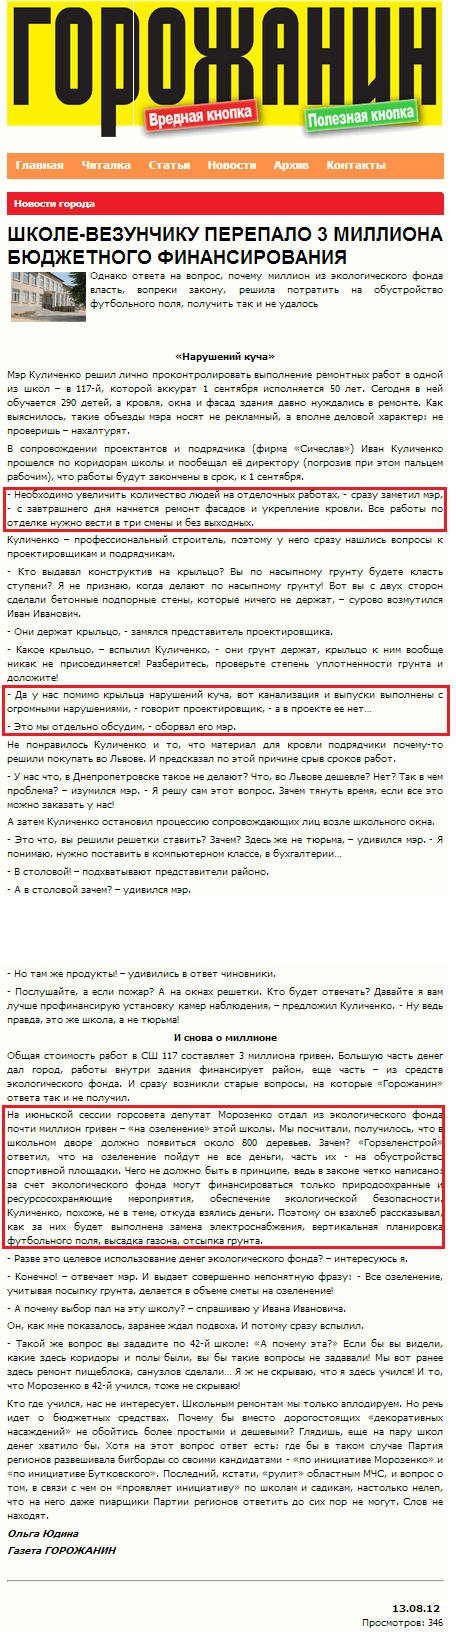 http://www.gazeta.dp.ua/read/shkole_vezunchiku_perepalo_3_milliona_budzhetnogo_finansirov